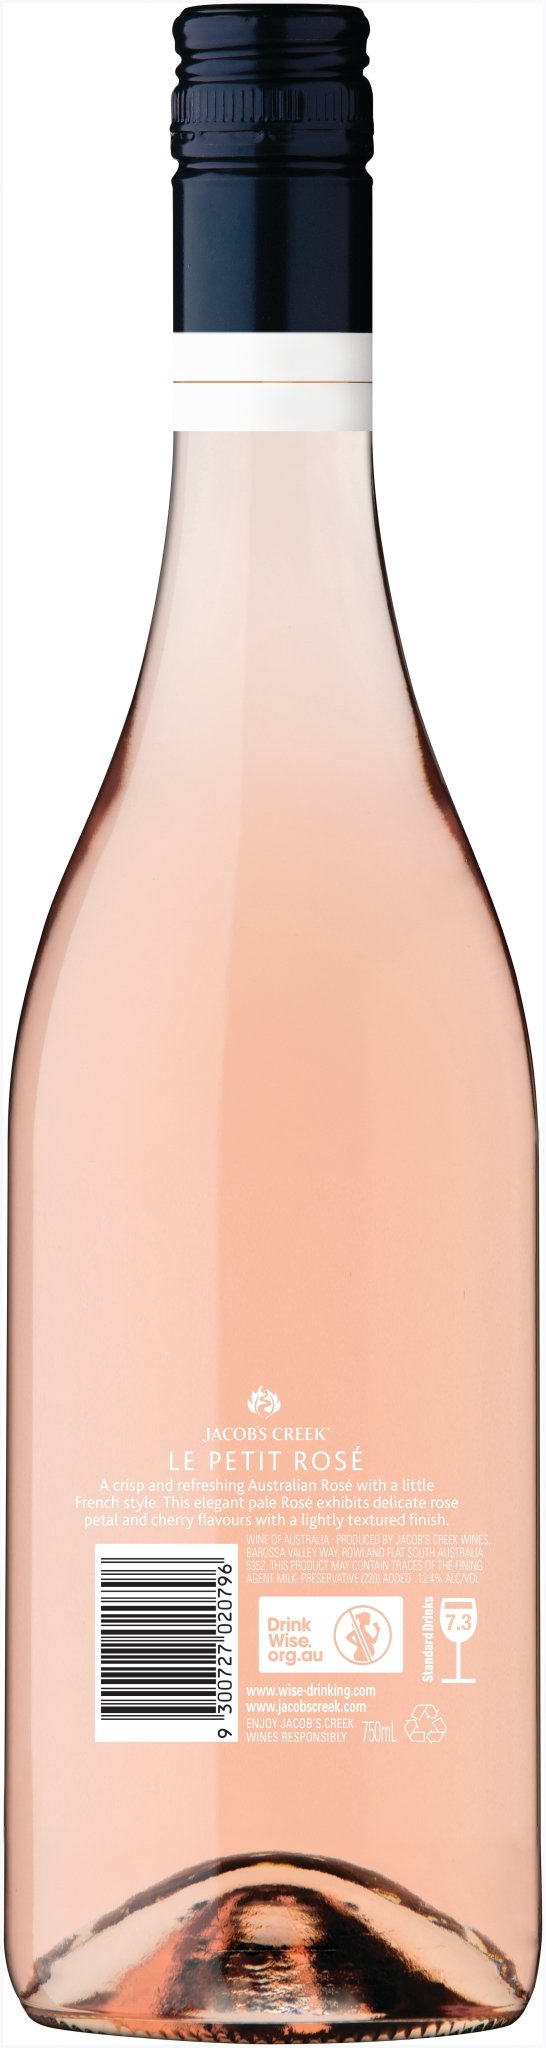 Buy Jacob's Creek Jacob's Creek Le Petit Rosé (750mL) at Secret Bottle